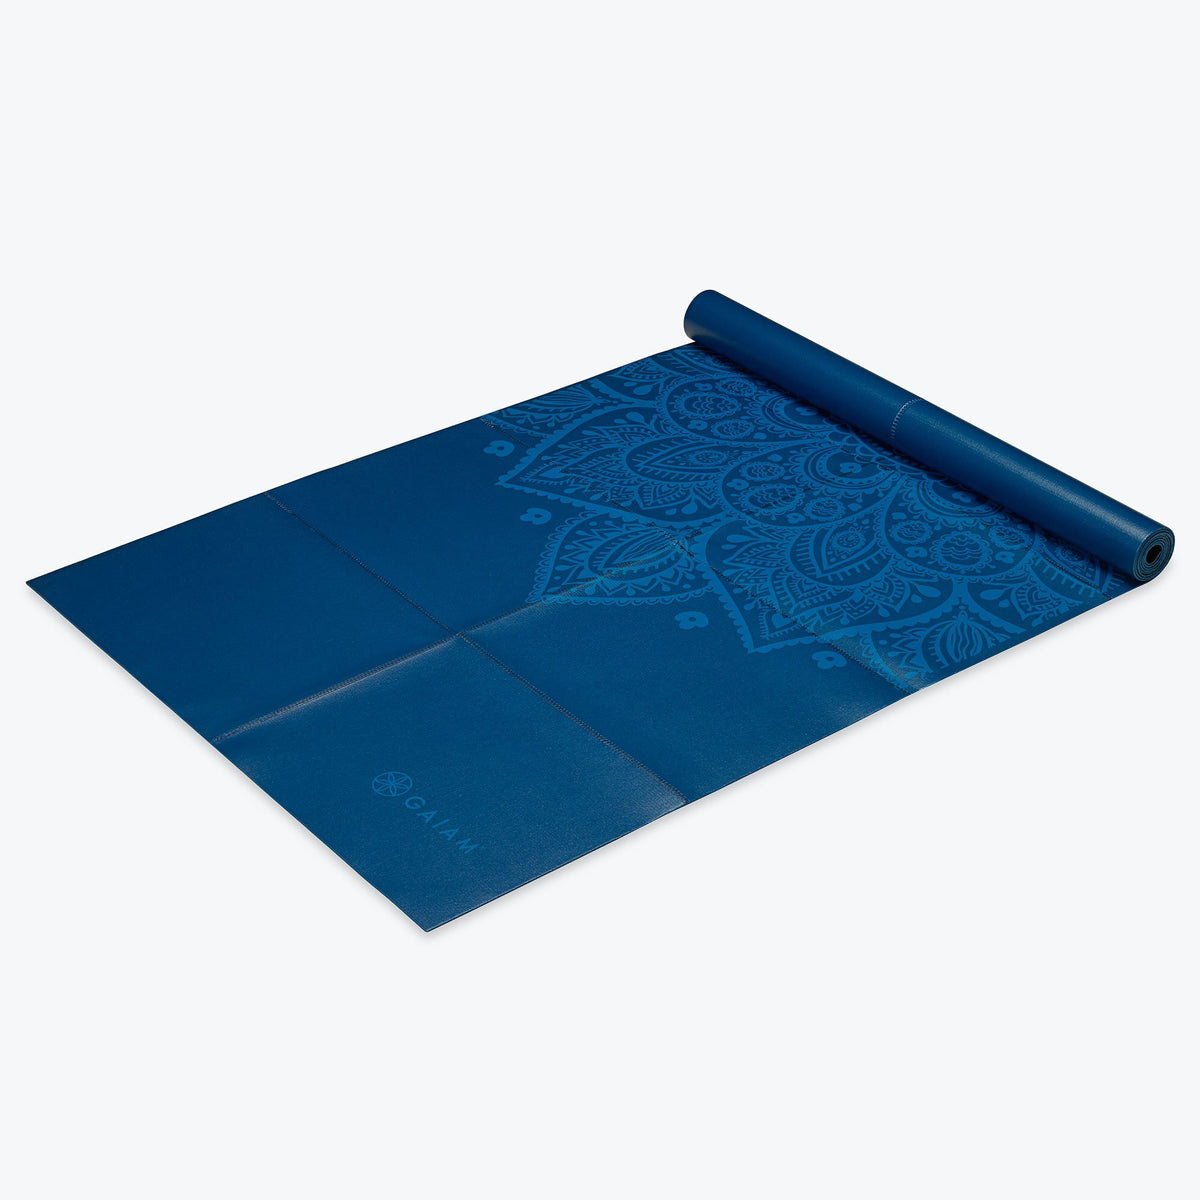 Gaiam Foldable Yoga Mat (2mm) – GetACTV